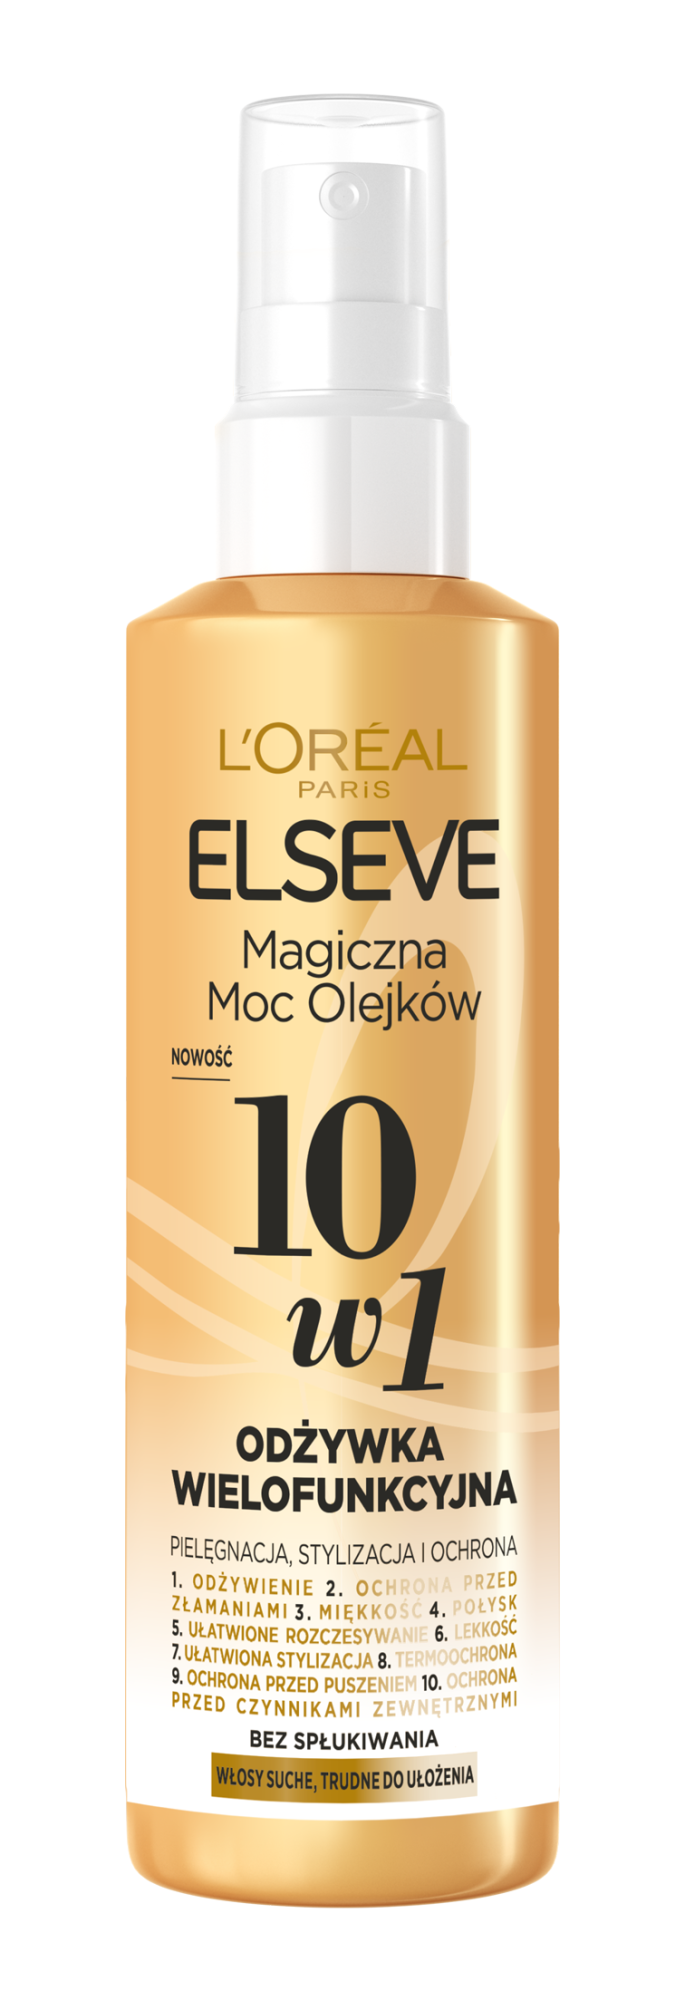 L'Oréal Paris Elseve Magiczna Moc Olejków многофункциональный кондиционер для волос 10в1, 150 мл